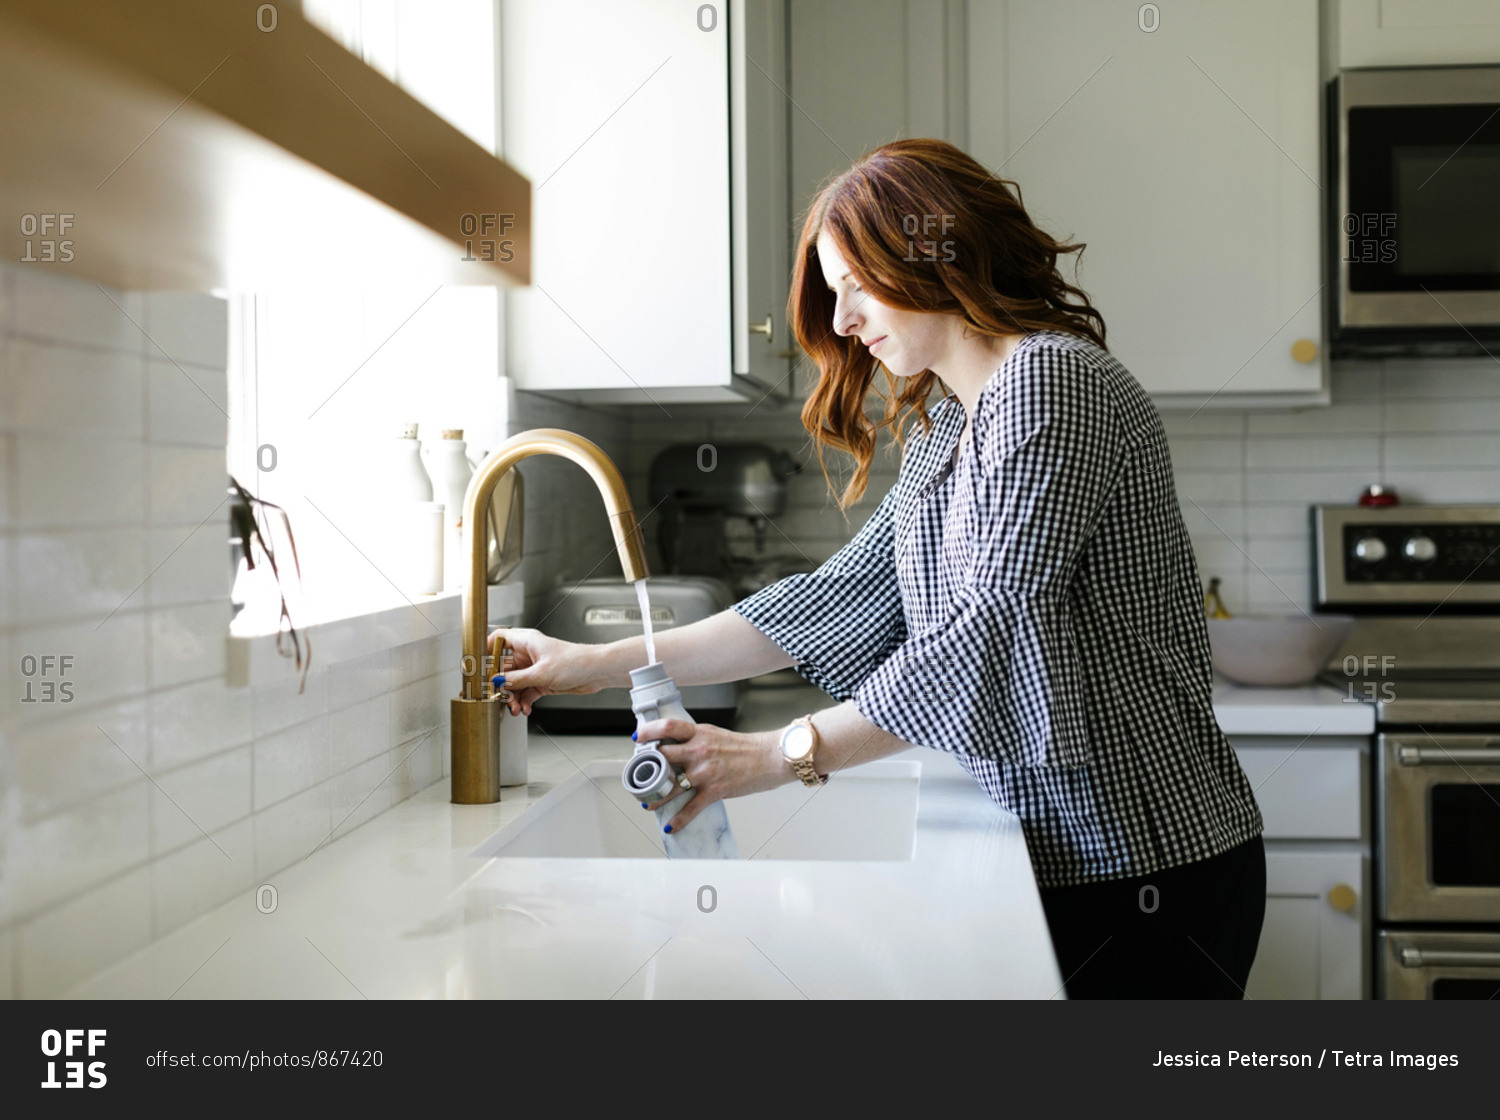 Woman filling water bottle in kitchen sink